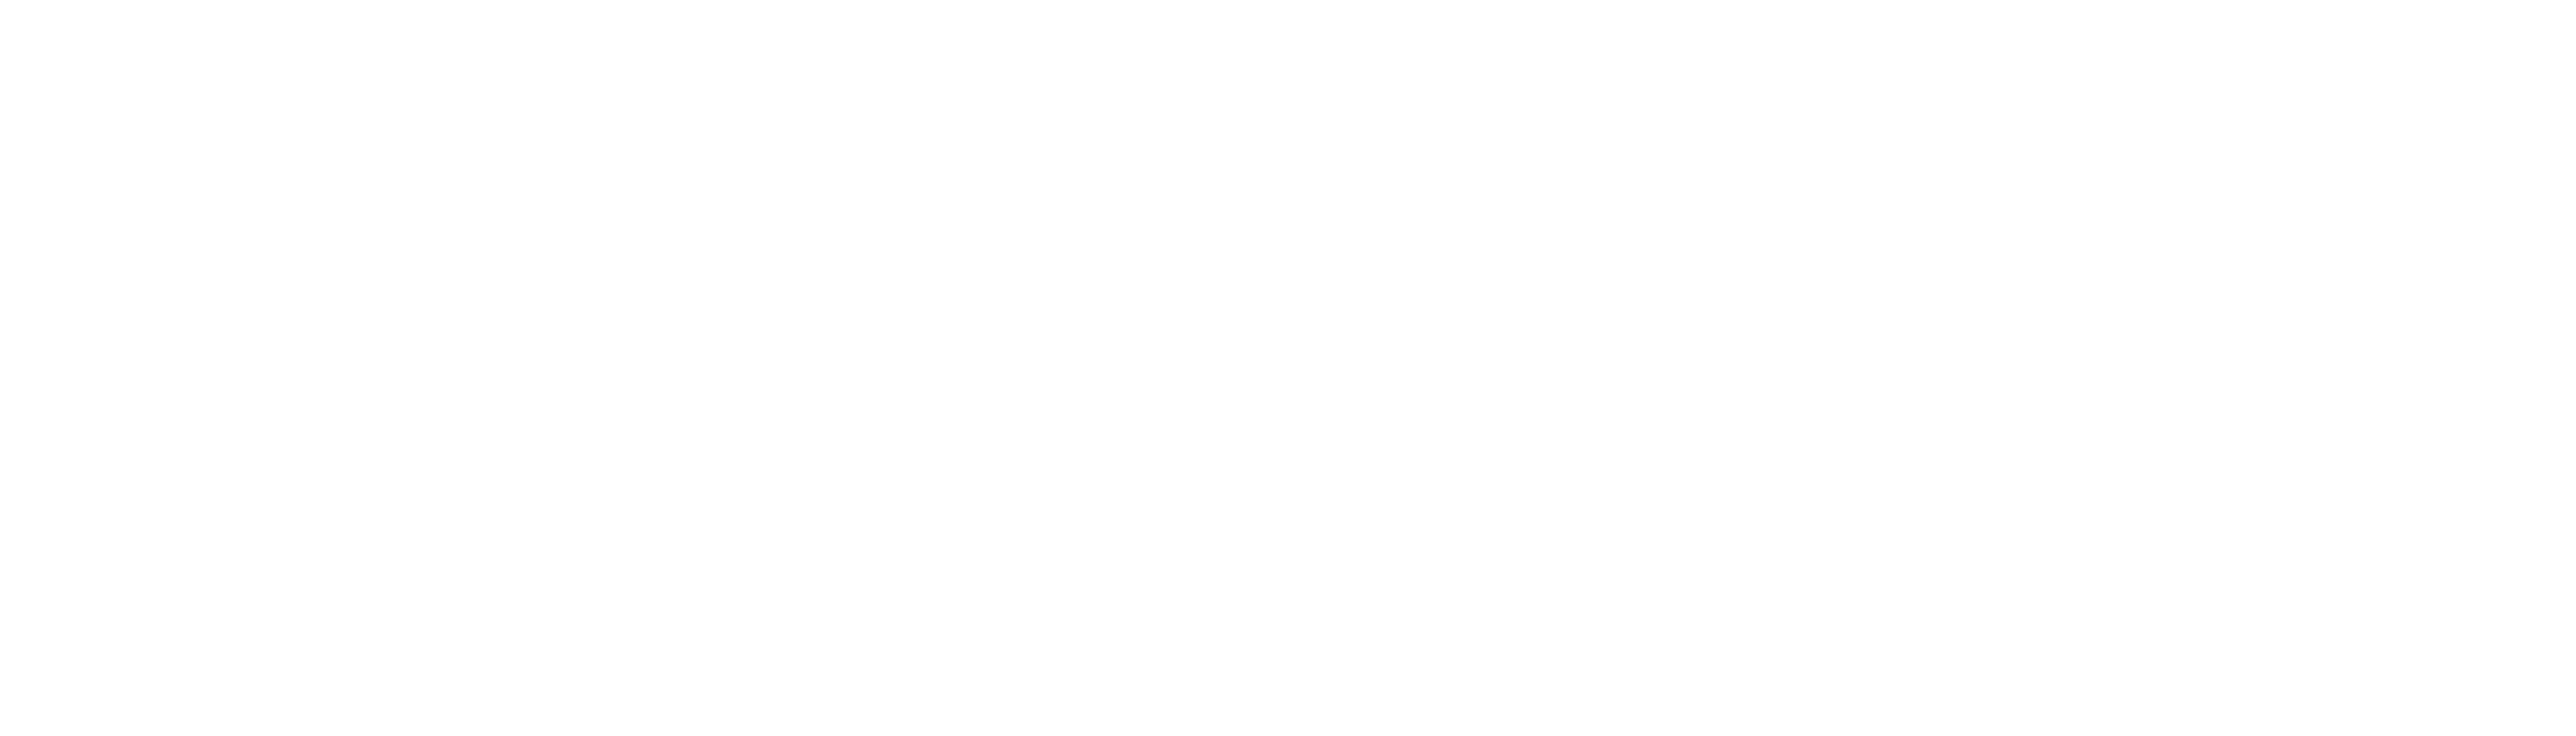 royal_society_of_chemistry